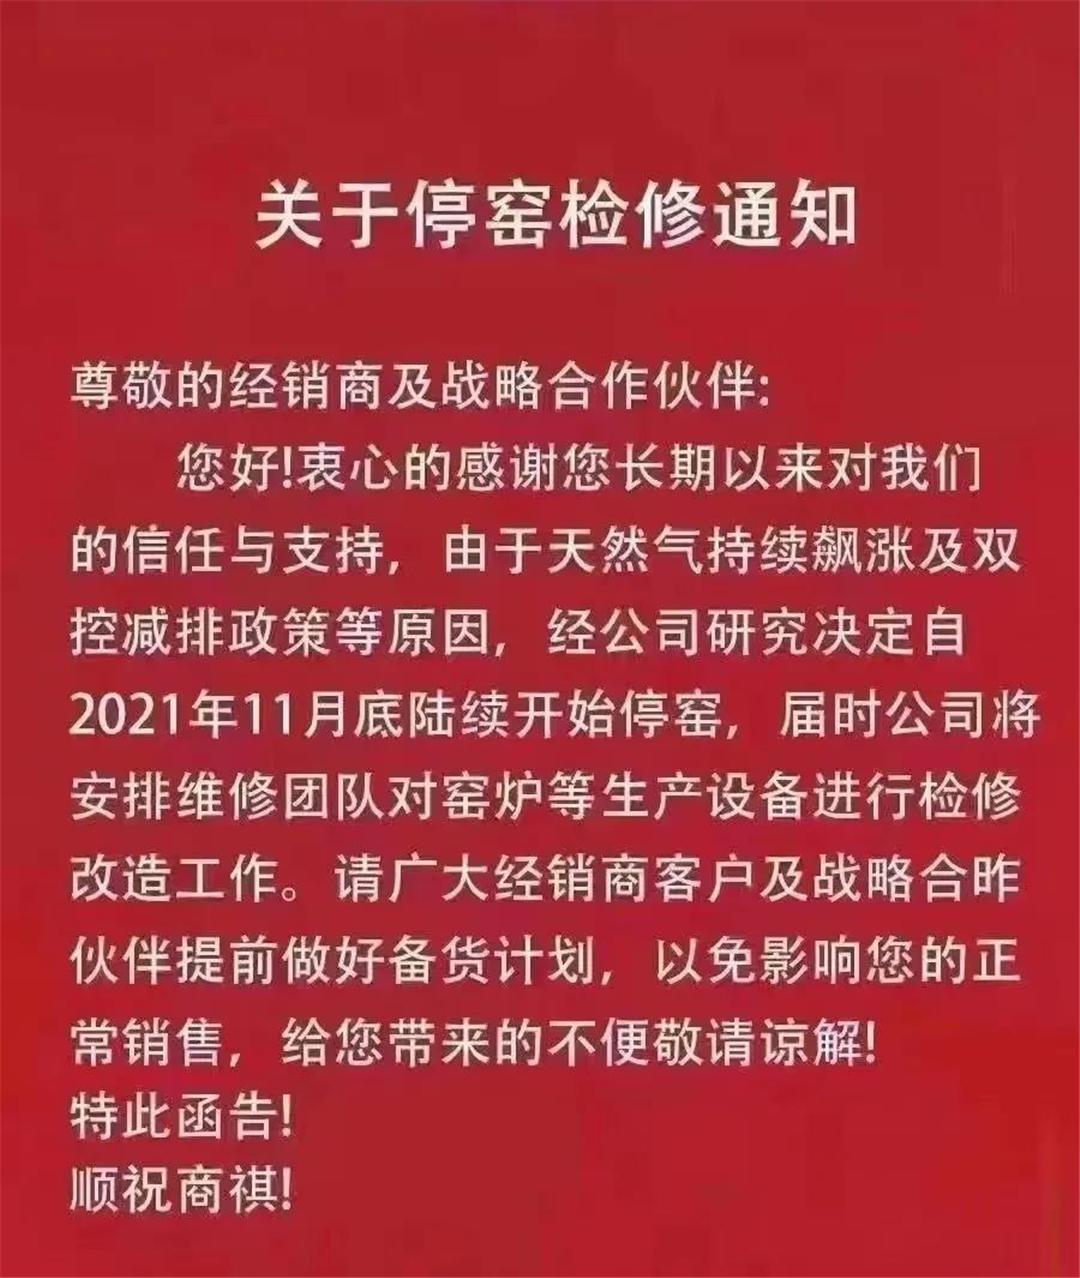 广东、江西、广西多地陶瓷厂发布停窑检修通知